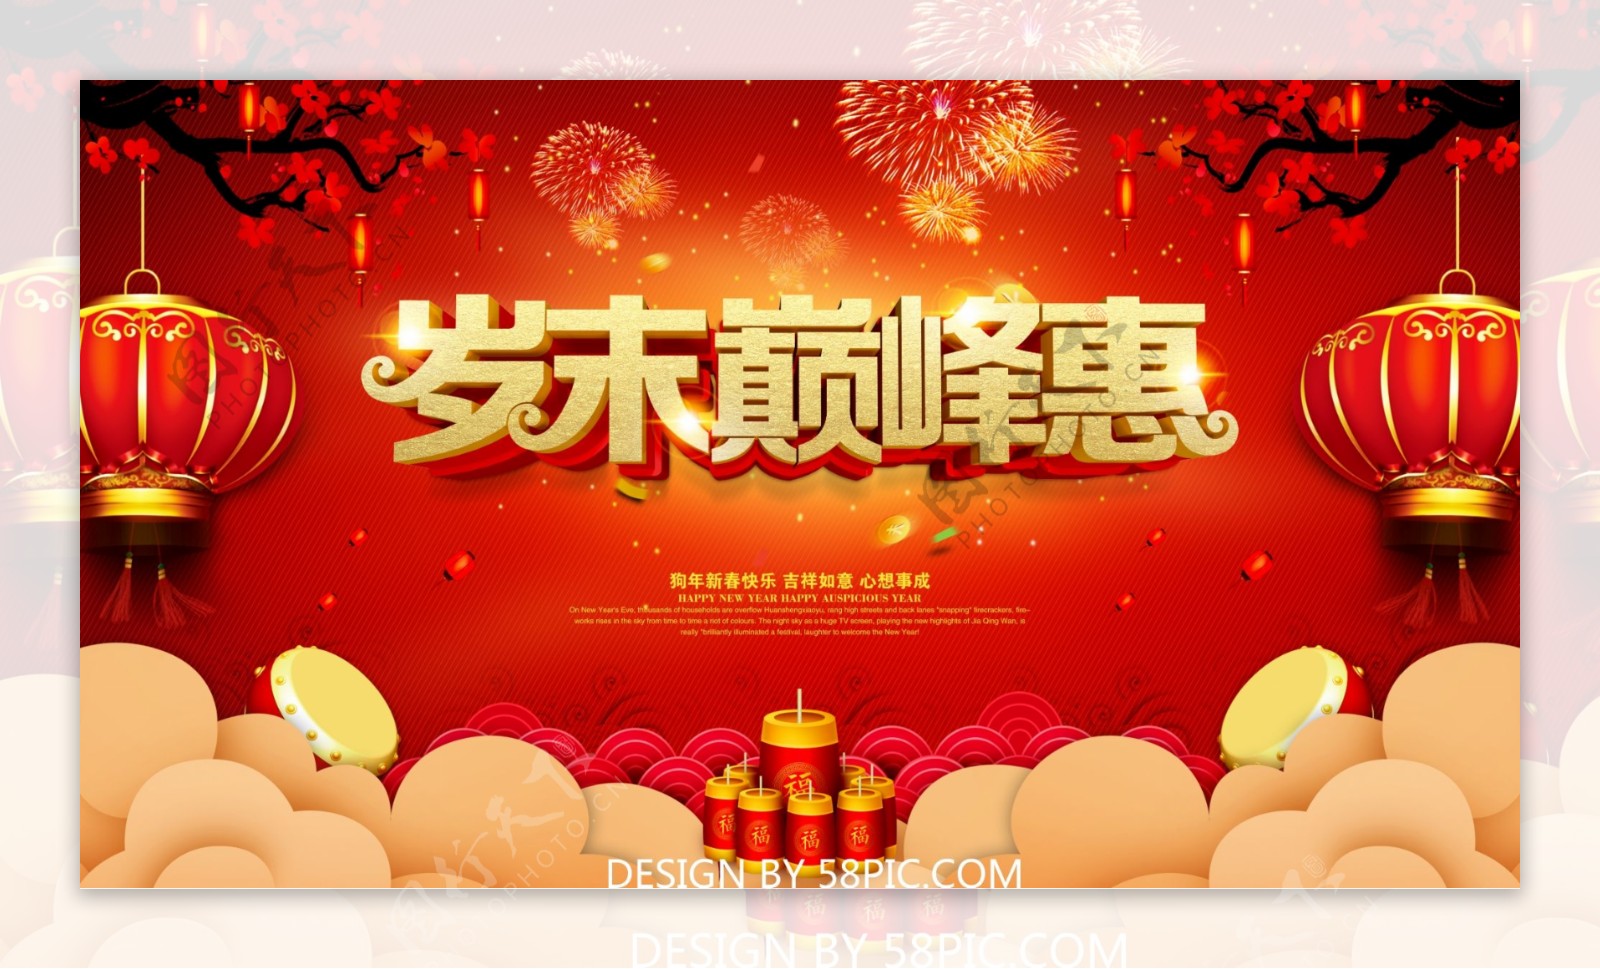 岁末巅峰惠红色促销海报设计PSD模版